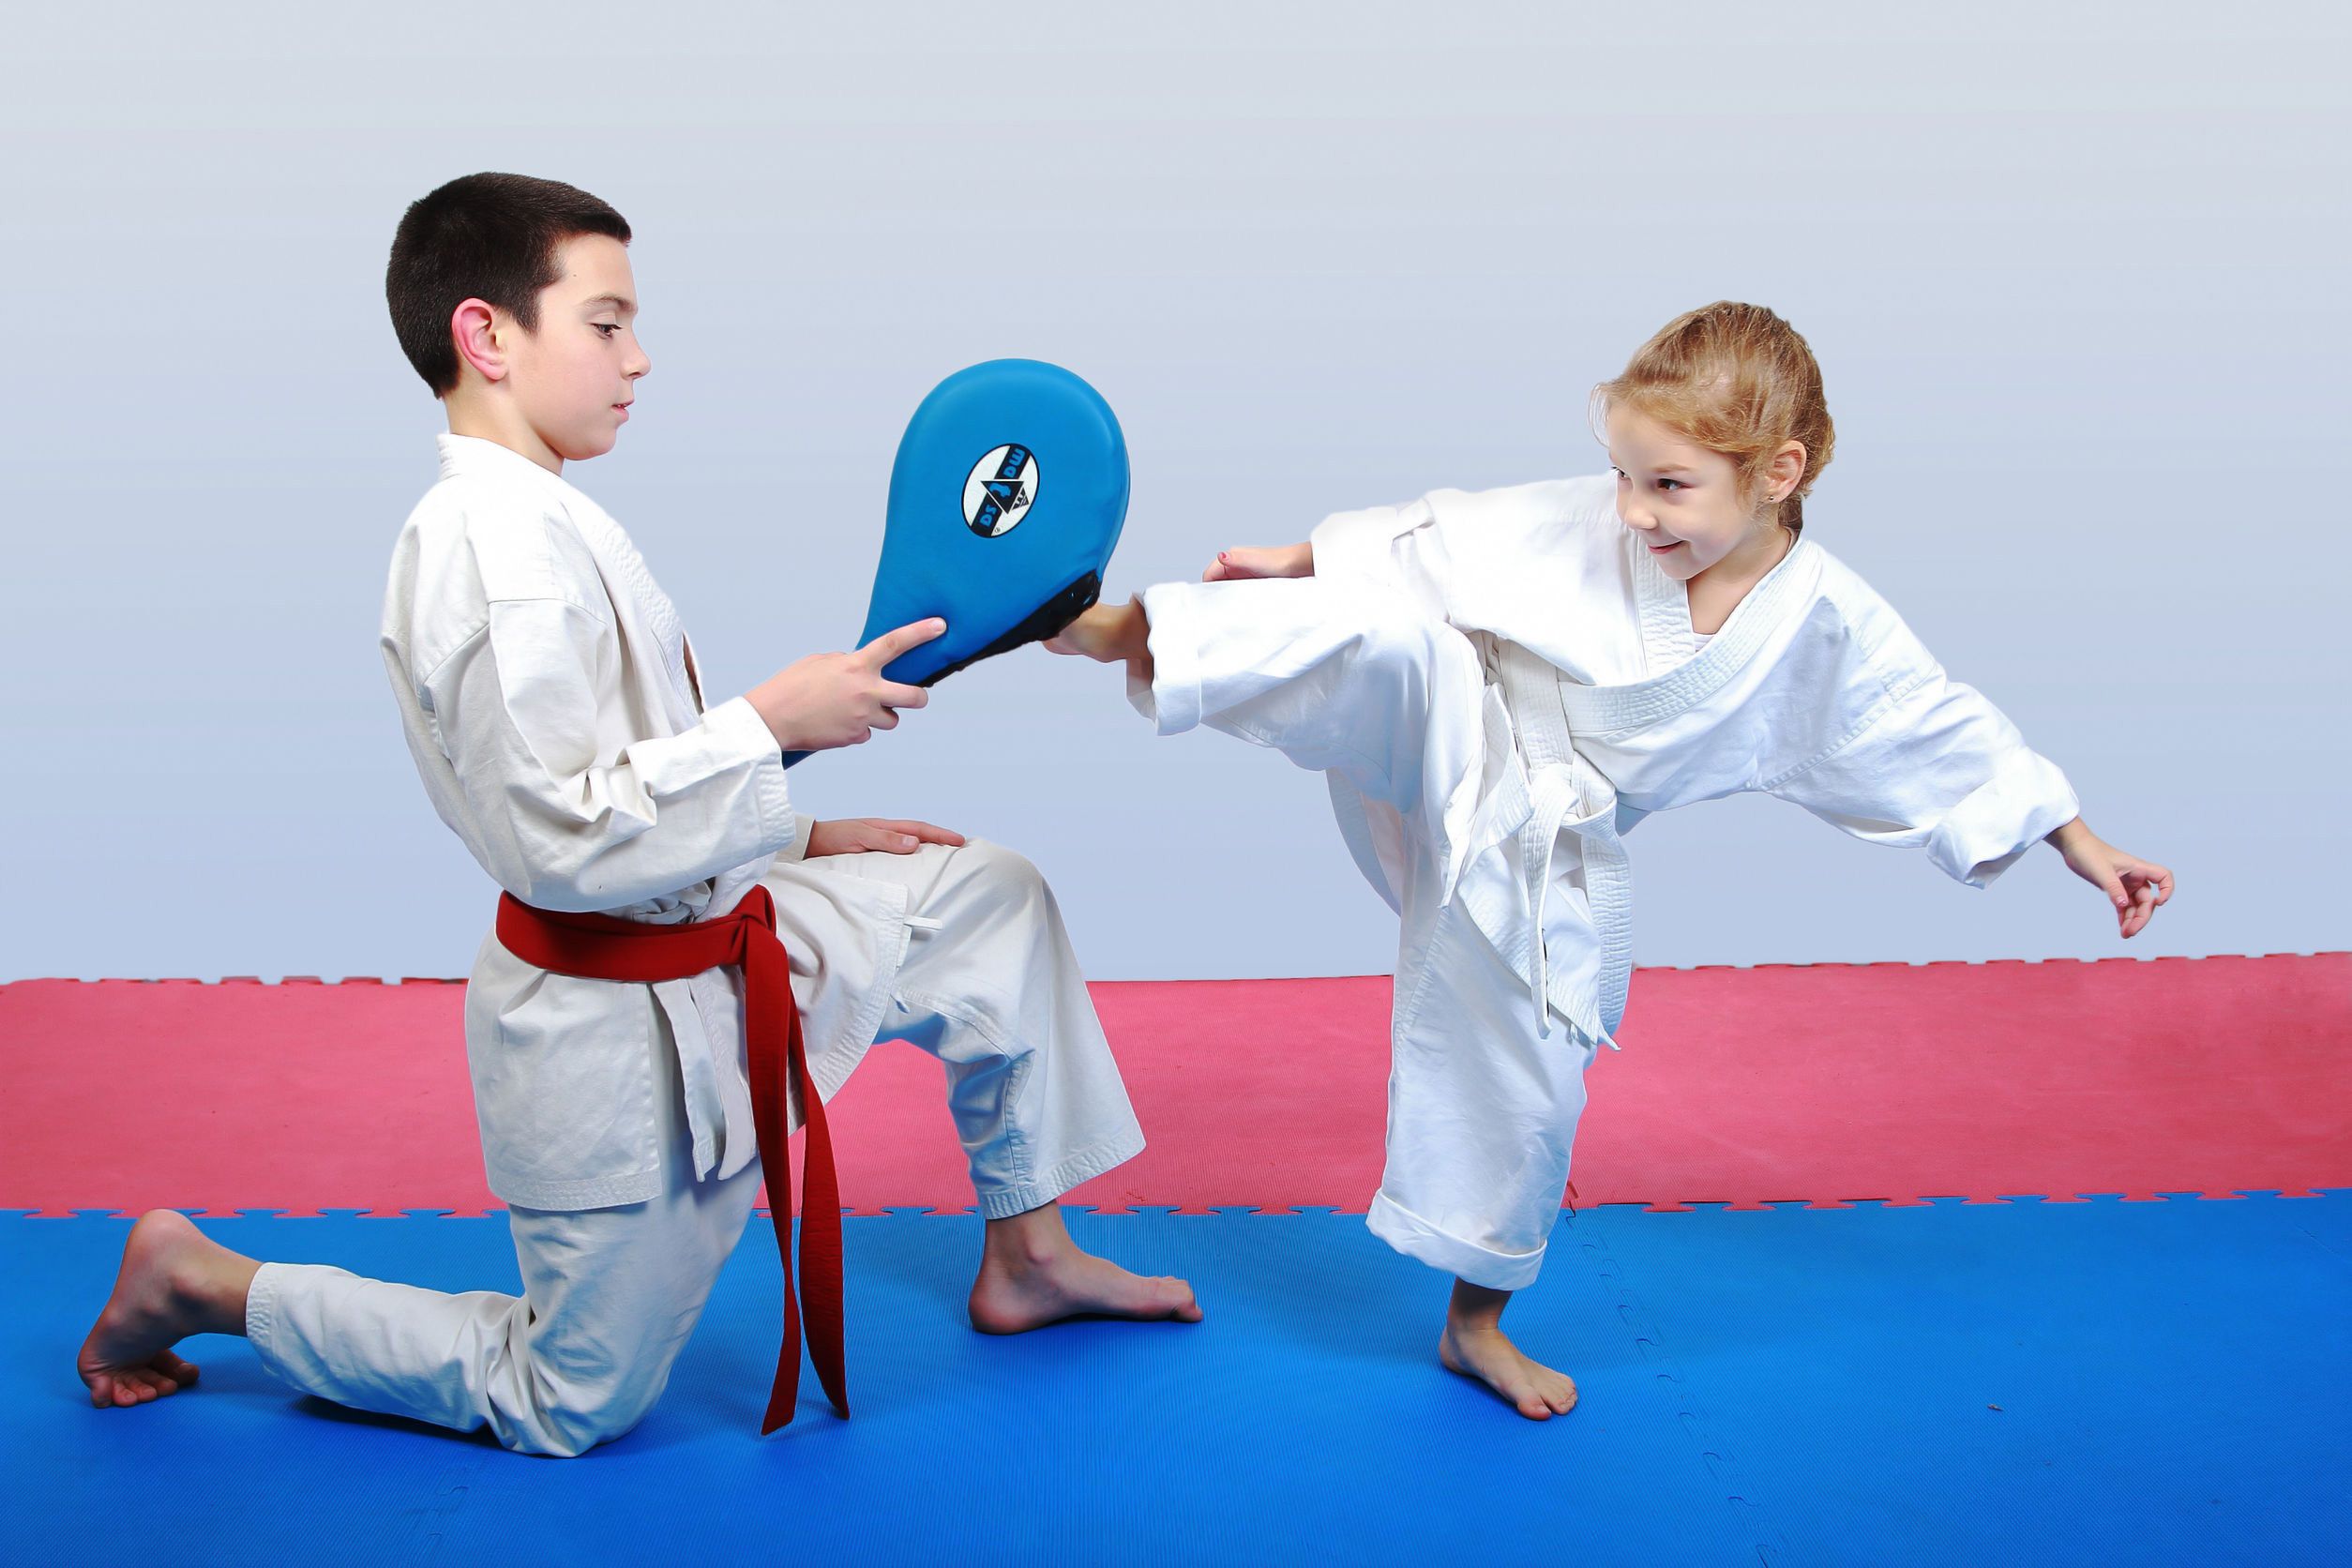 Pentingnya Mengajarkan Olahraga Bela Diri pada Anak